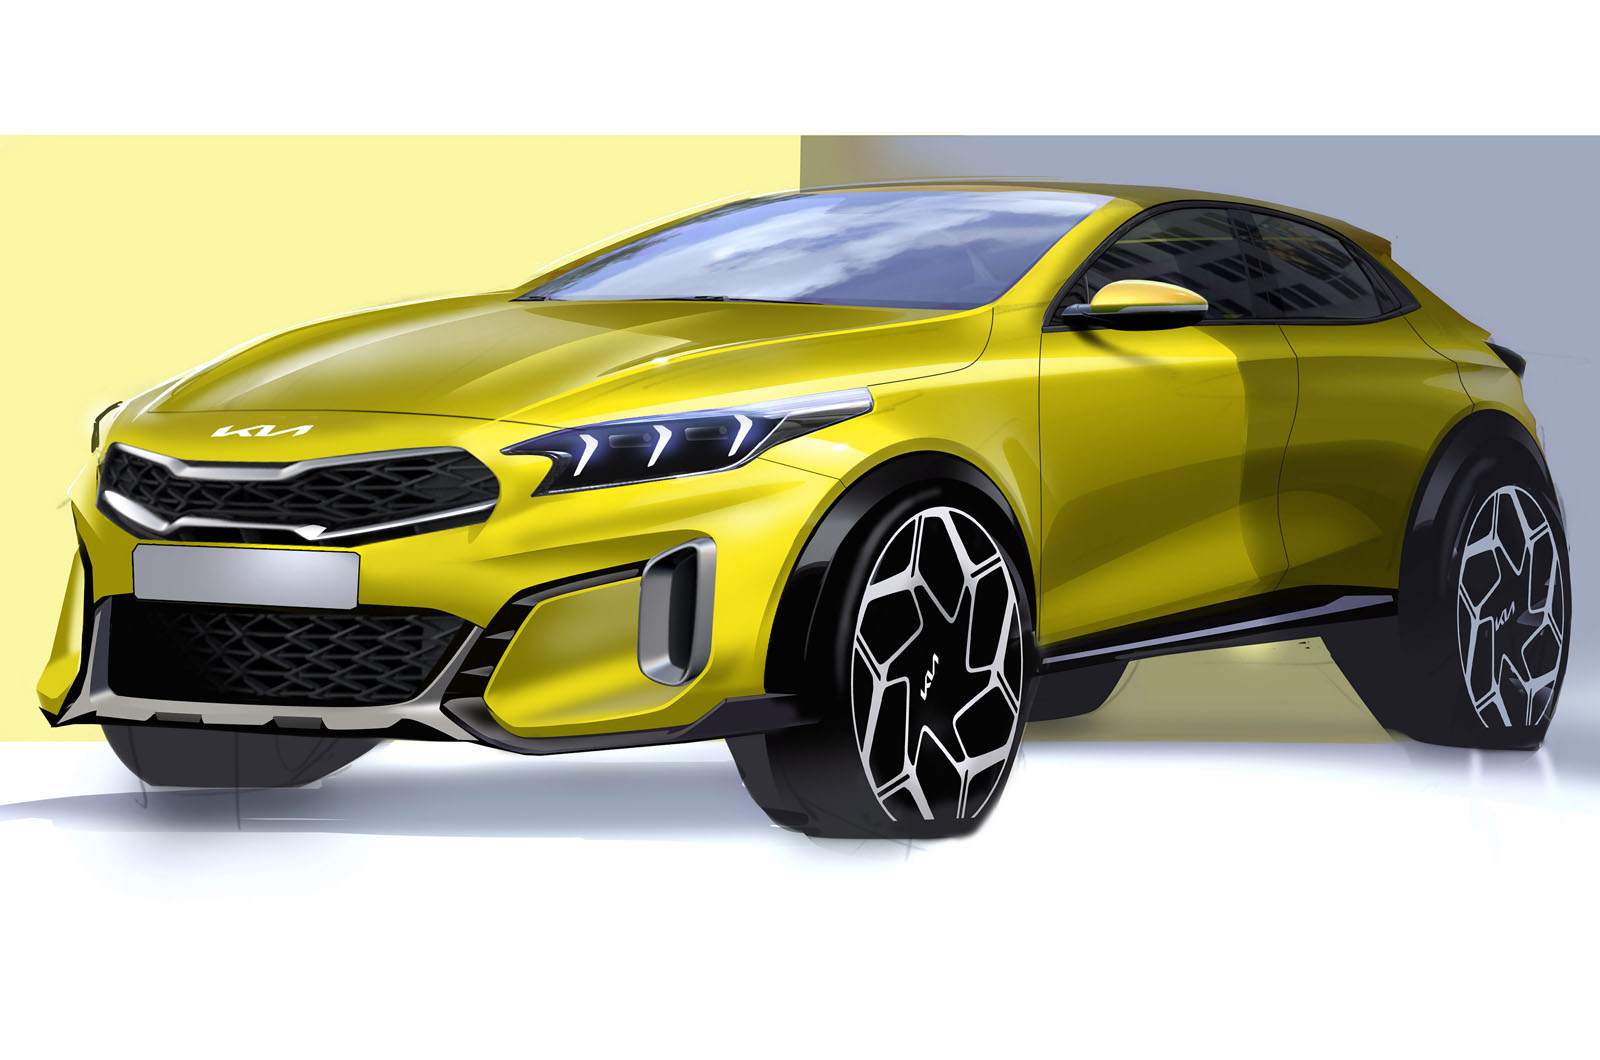 Kia Ceed GT FULL REVIEW 2020 all-new - Autogefühl 